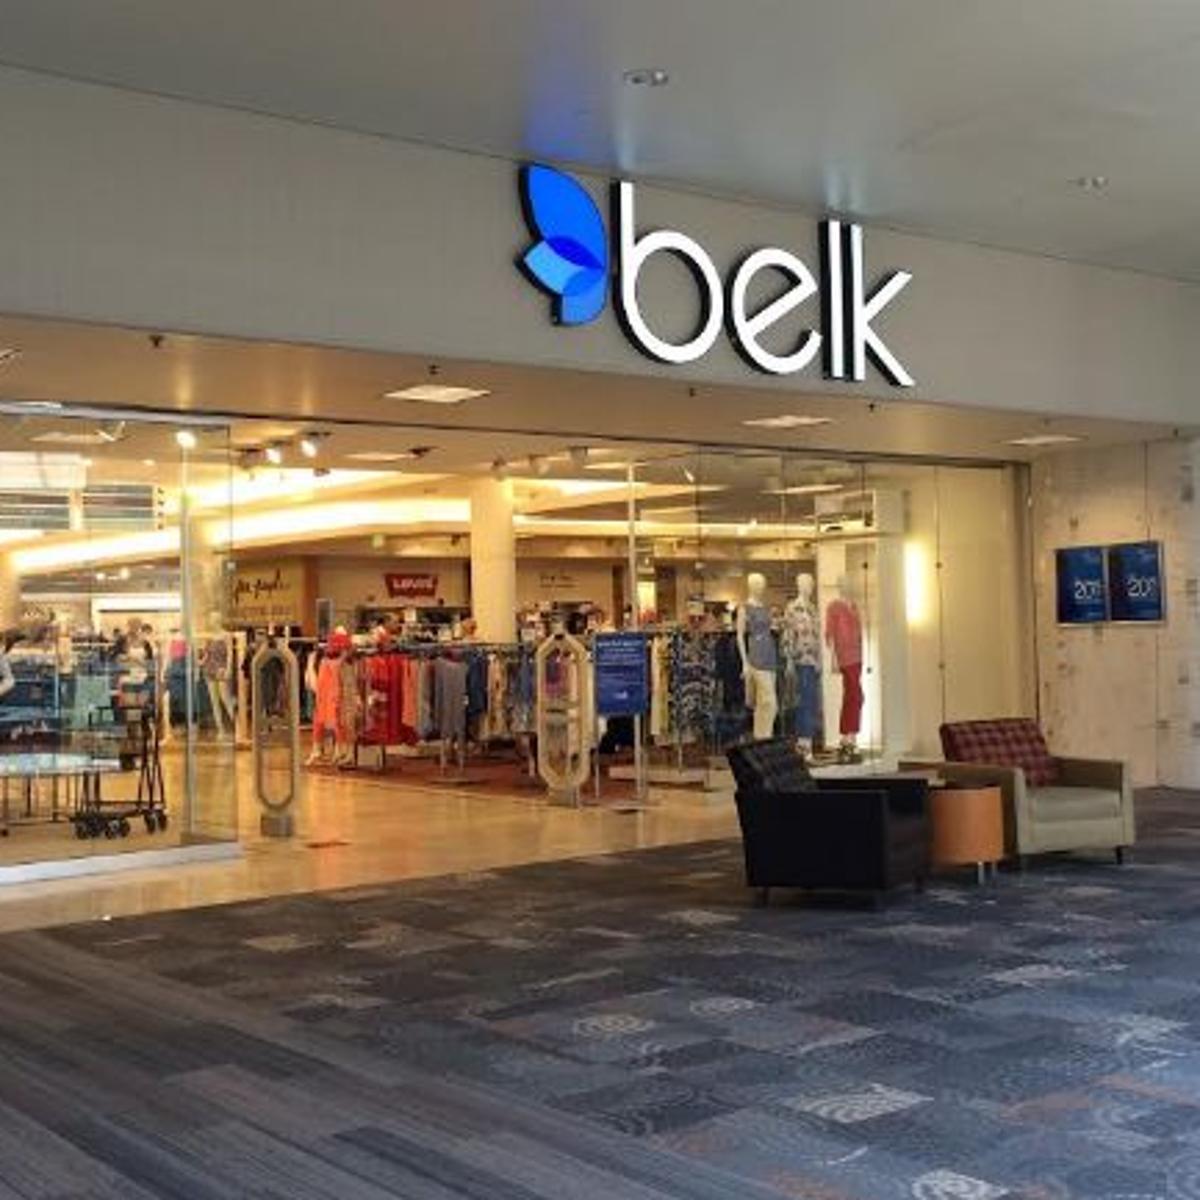 Belk Department Store Colleyville, TX 76034 - Last Updated